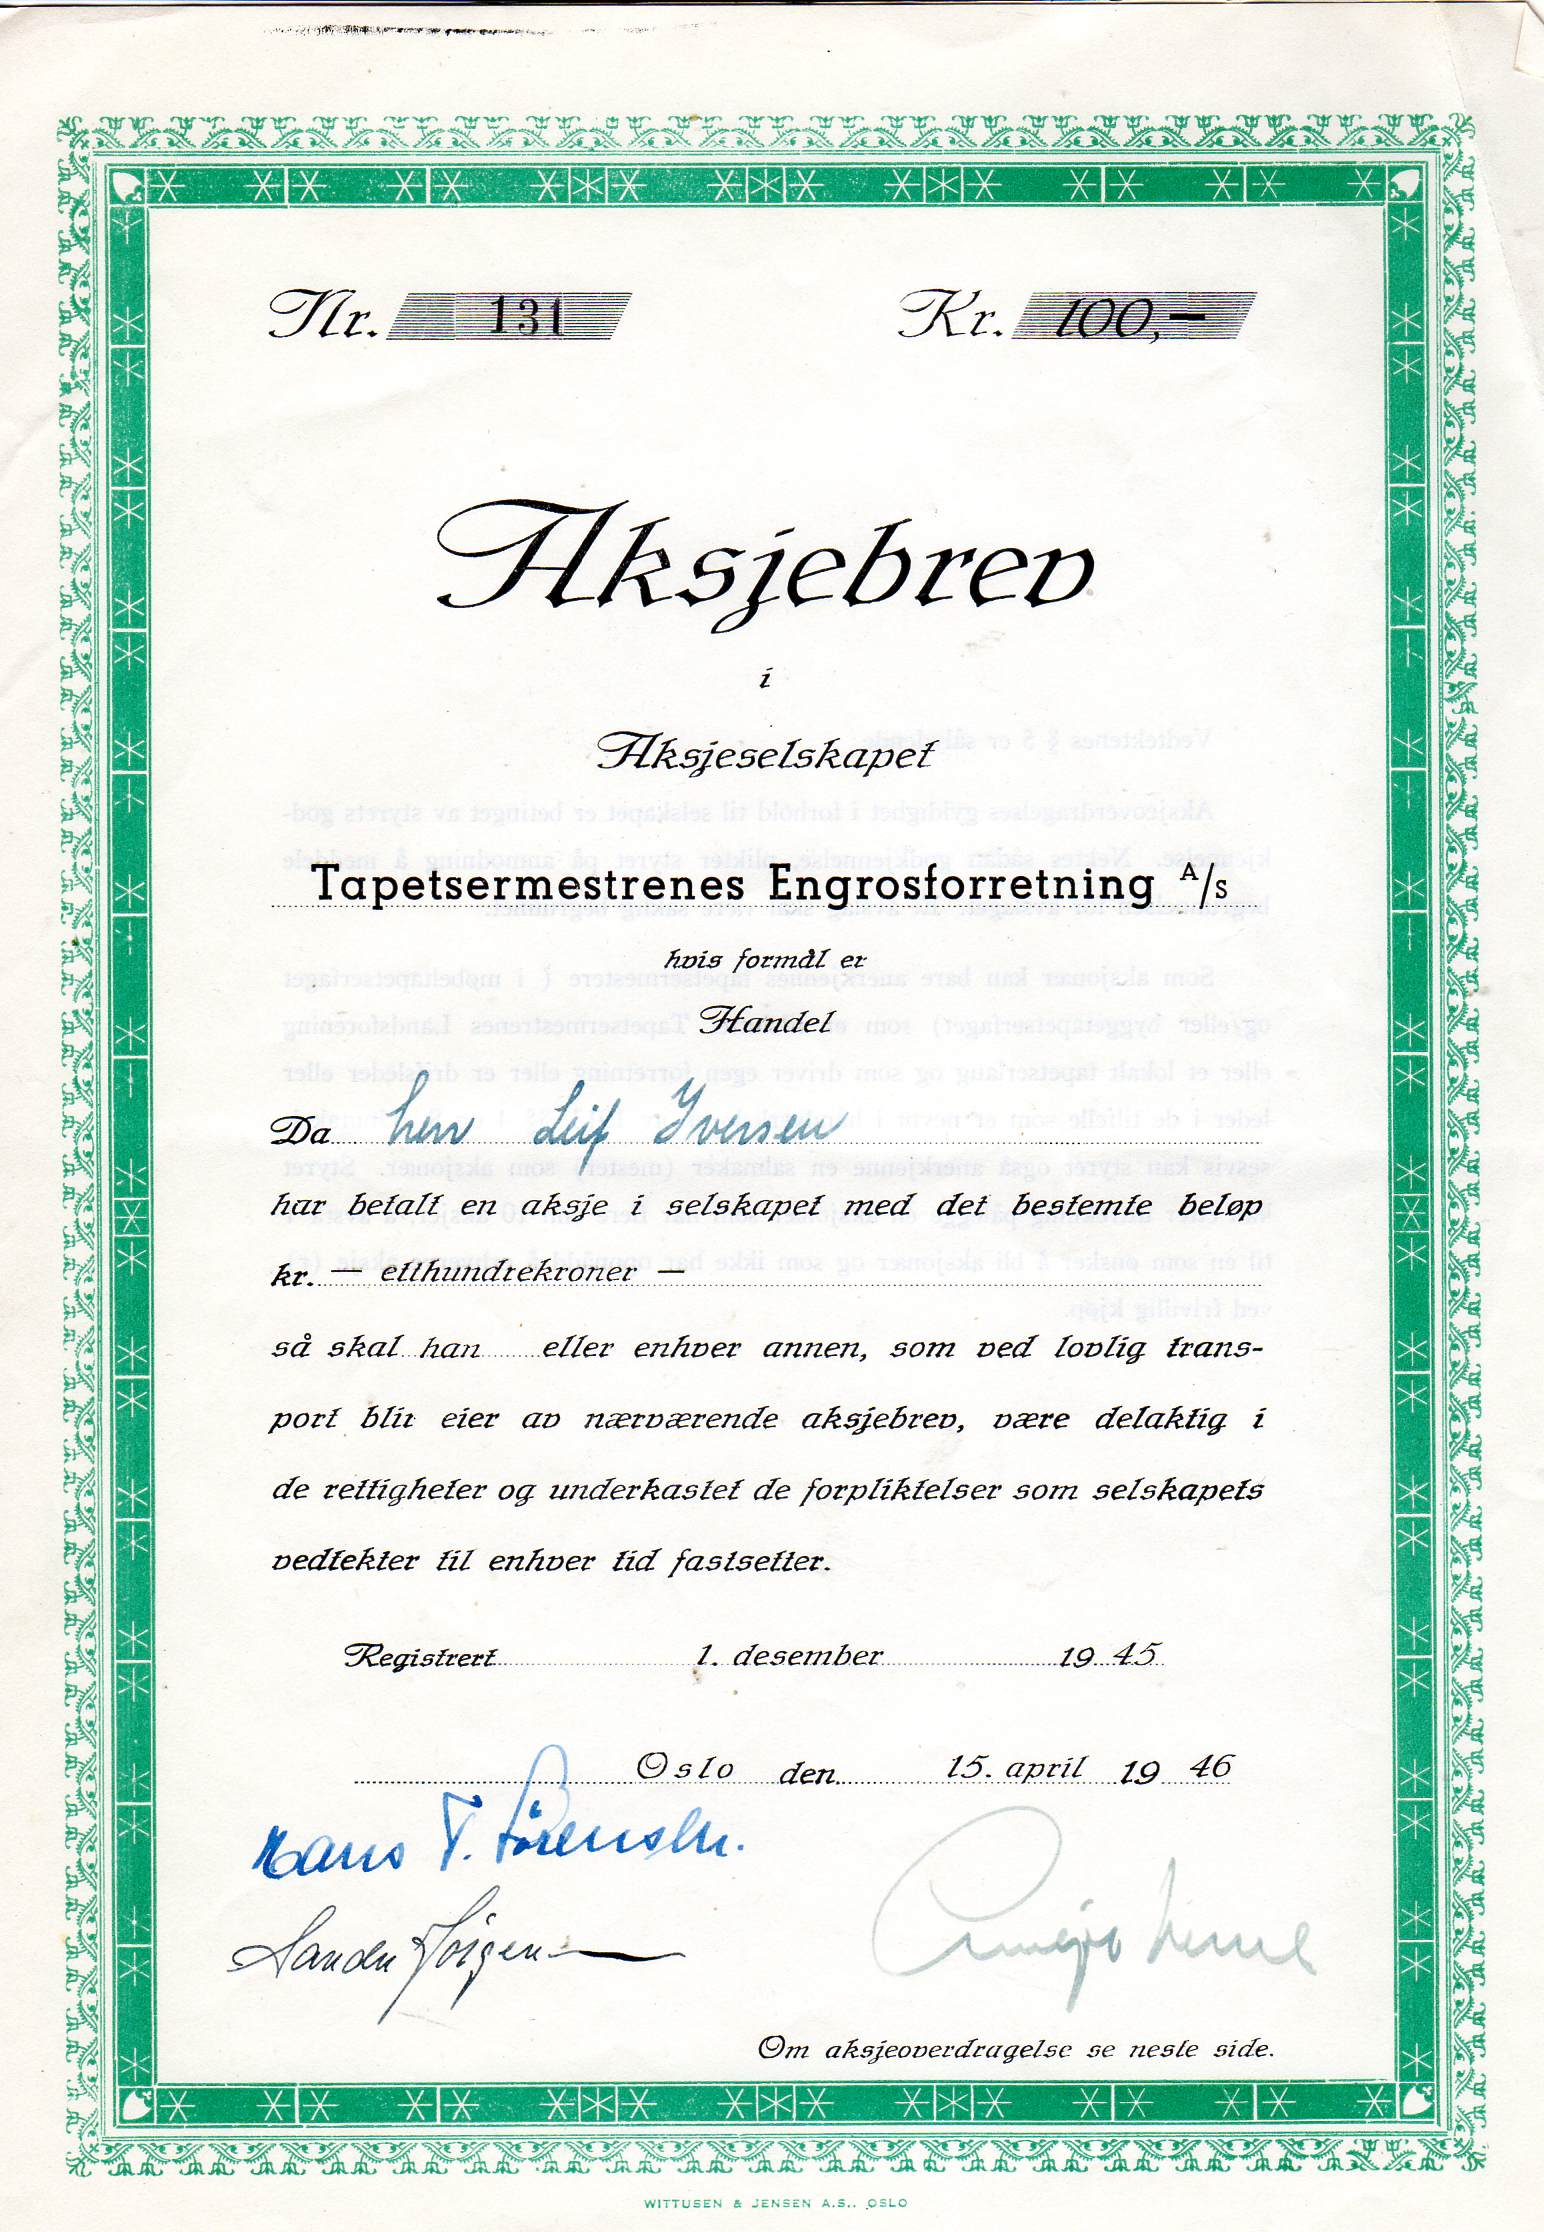 Tapermestrenes Engrosforretning Oslo 1949 kr 100 nr 1439/131/1195 pris pr stk